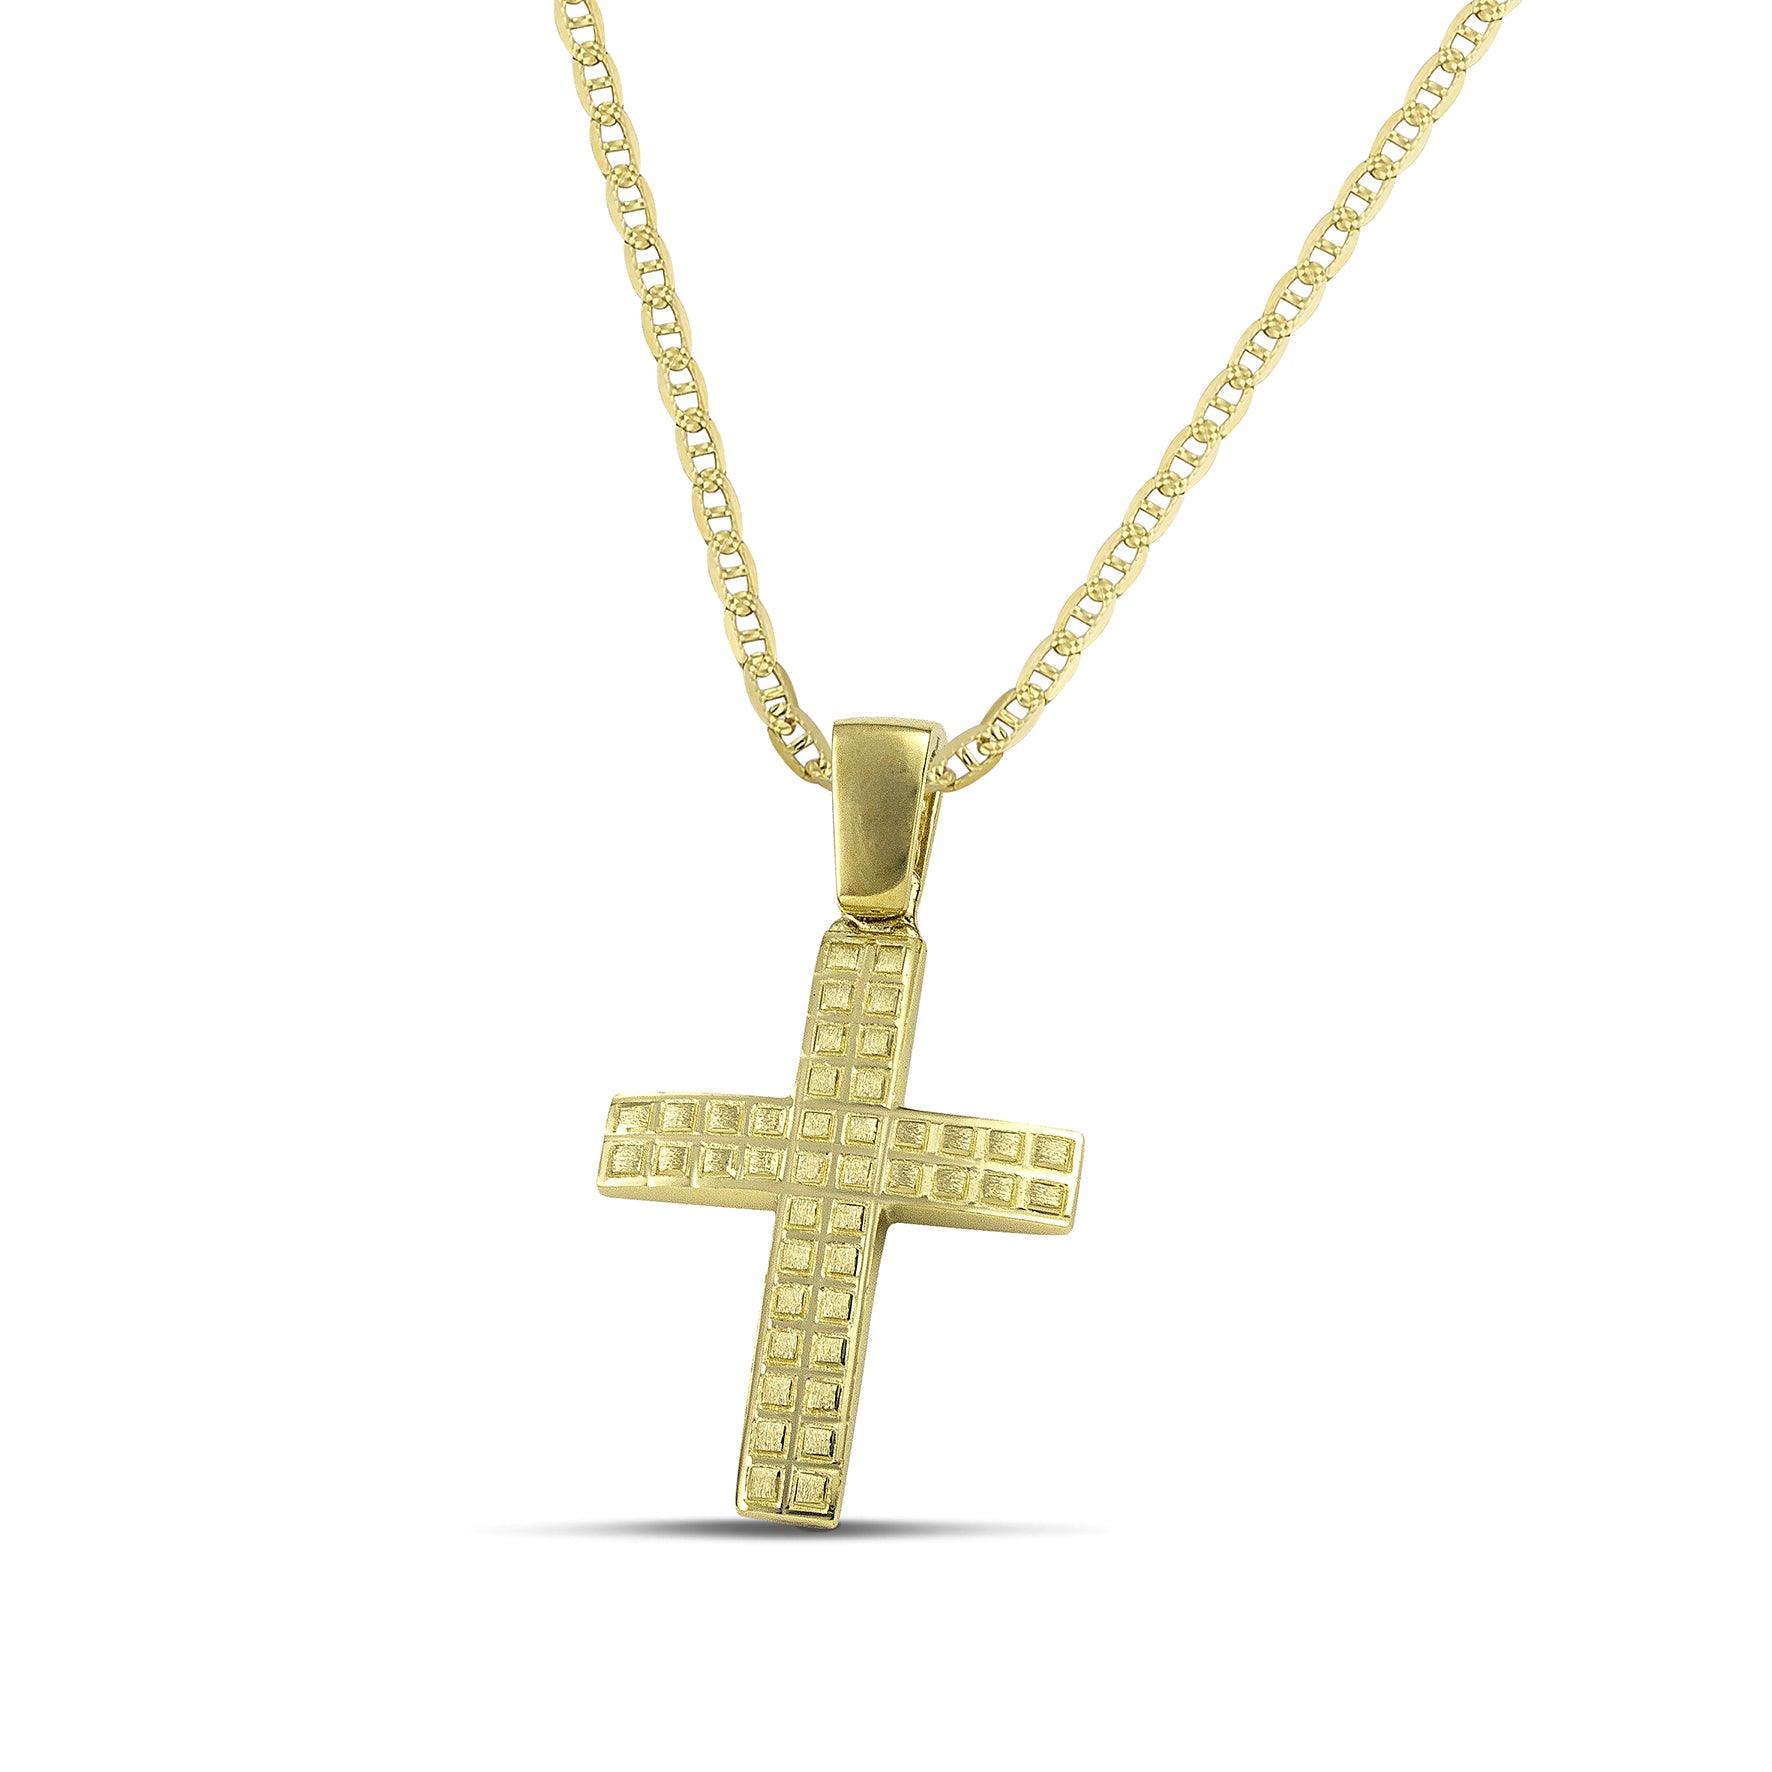 Ανδρικός χρυσός σταυρός βάπτισης με τετράγωνα σχέδια, σε "Θ" αλυσίδα.